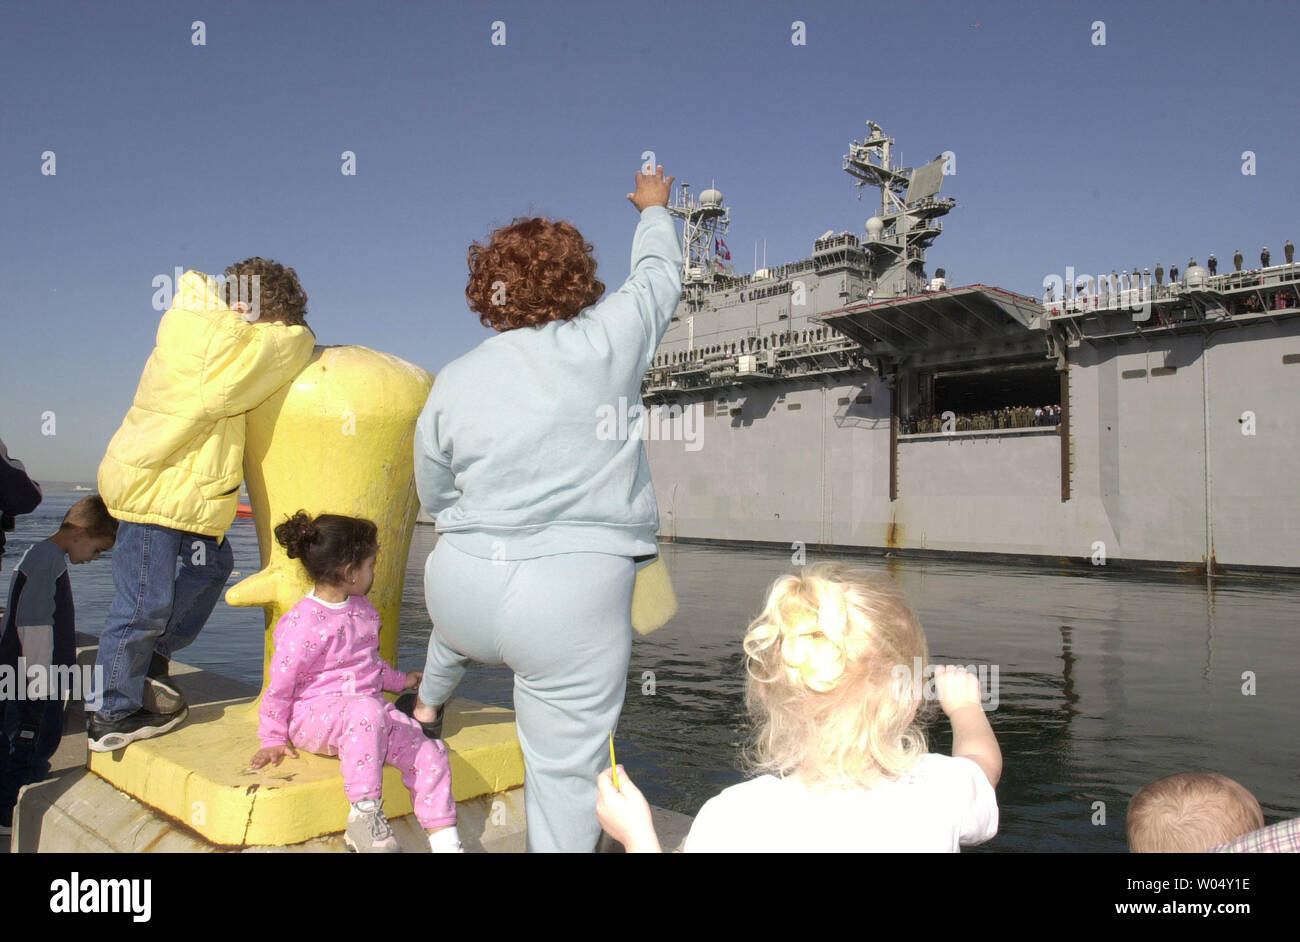 SDP2003010606- SAN DIEGO, 6 janvier (UPI) - Rose Wilson (centre) dit au revoir avec d'autres membres de la famille comme l'USS Tarawa s'éloigne du quai, le 6 janvier 2003 à San Diego, Californie. L'Tarawa ainsi que l'USS Duluth et USS Rushmore avec 4 000 Marines américains et les marins sont en cours de déploiement dans le golfe Persique. ec / EARL S. CRYER UPI Banque D'Images